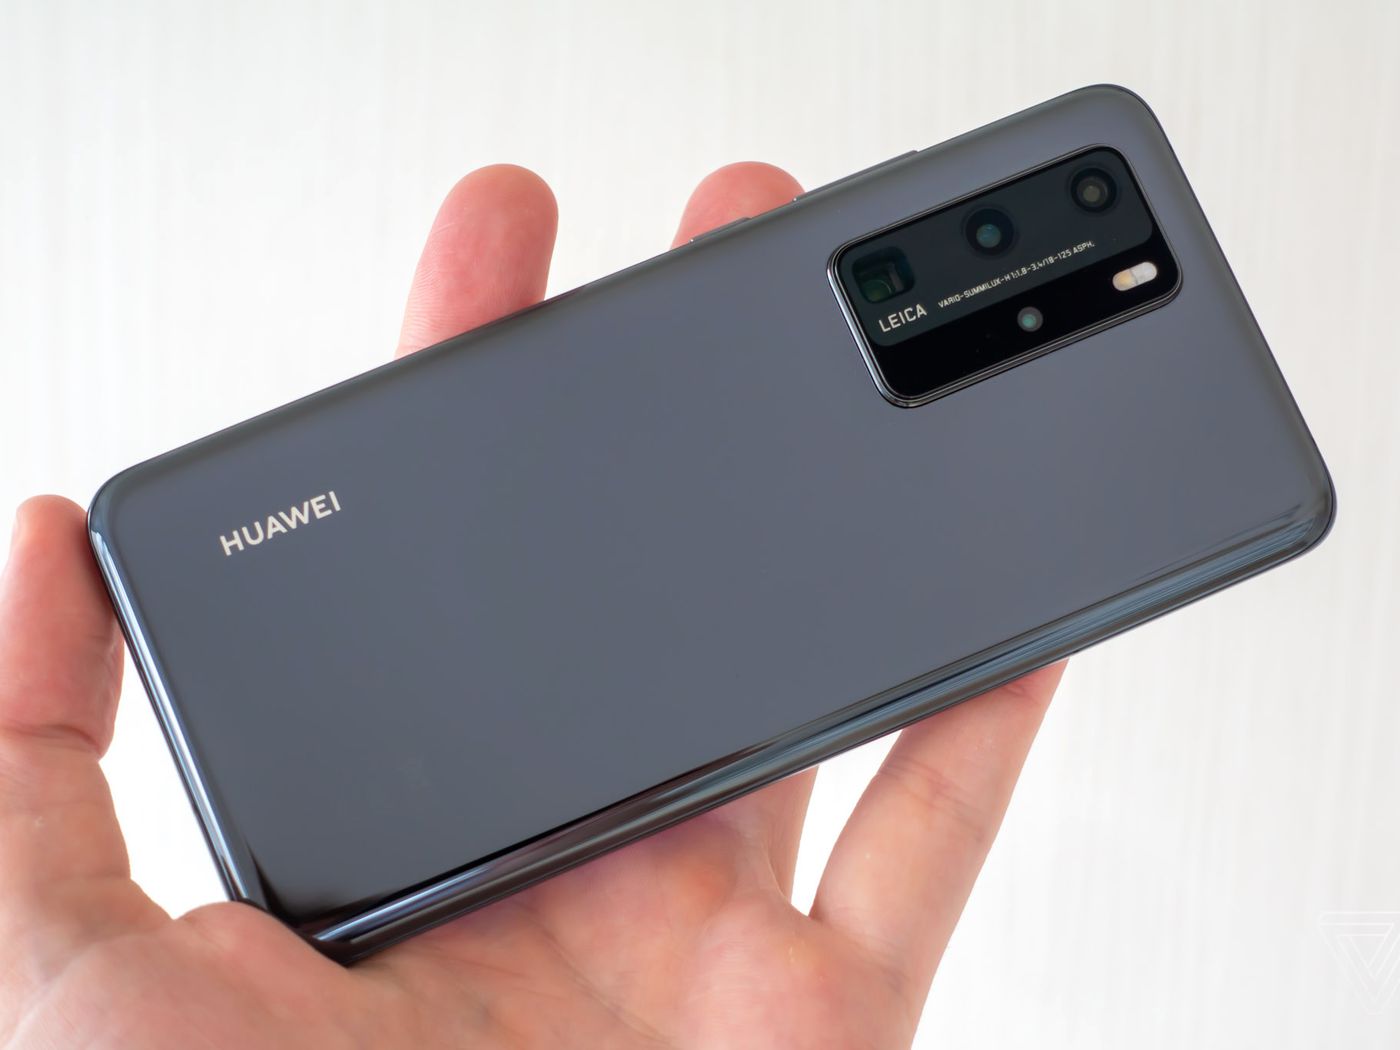 Huawei sẽ cắt giảm sản xuất hơn 60% điện thoại thông minh